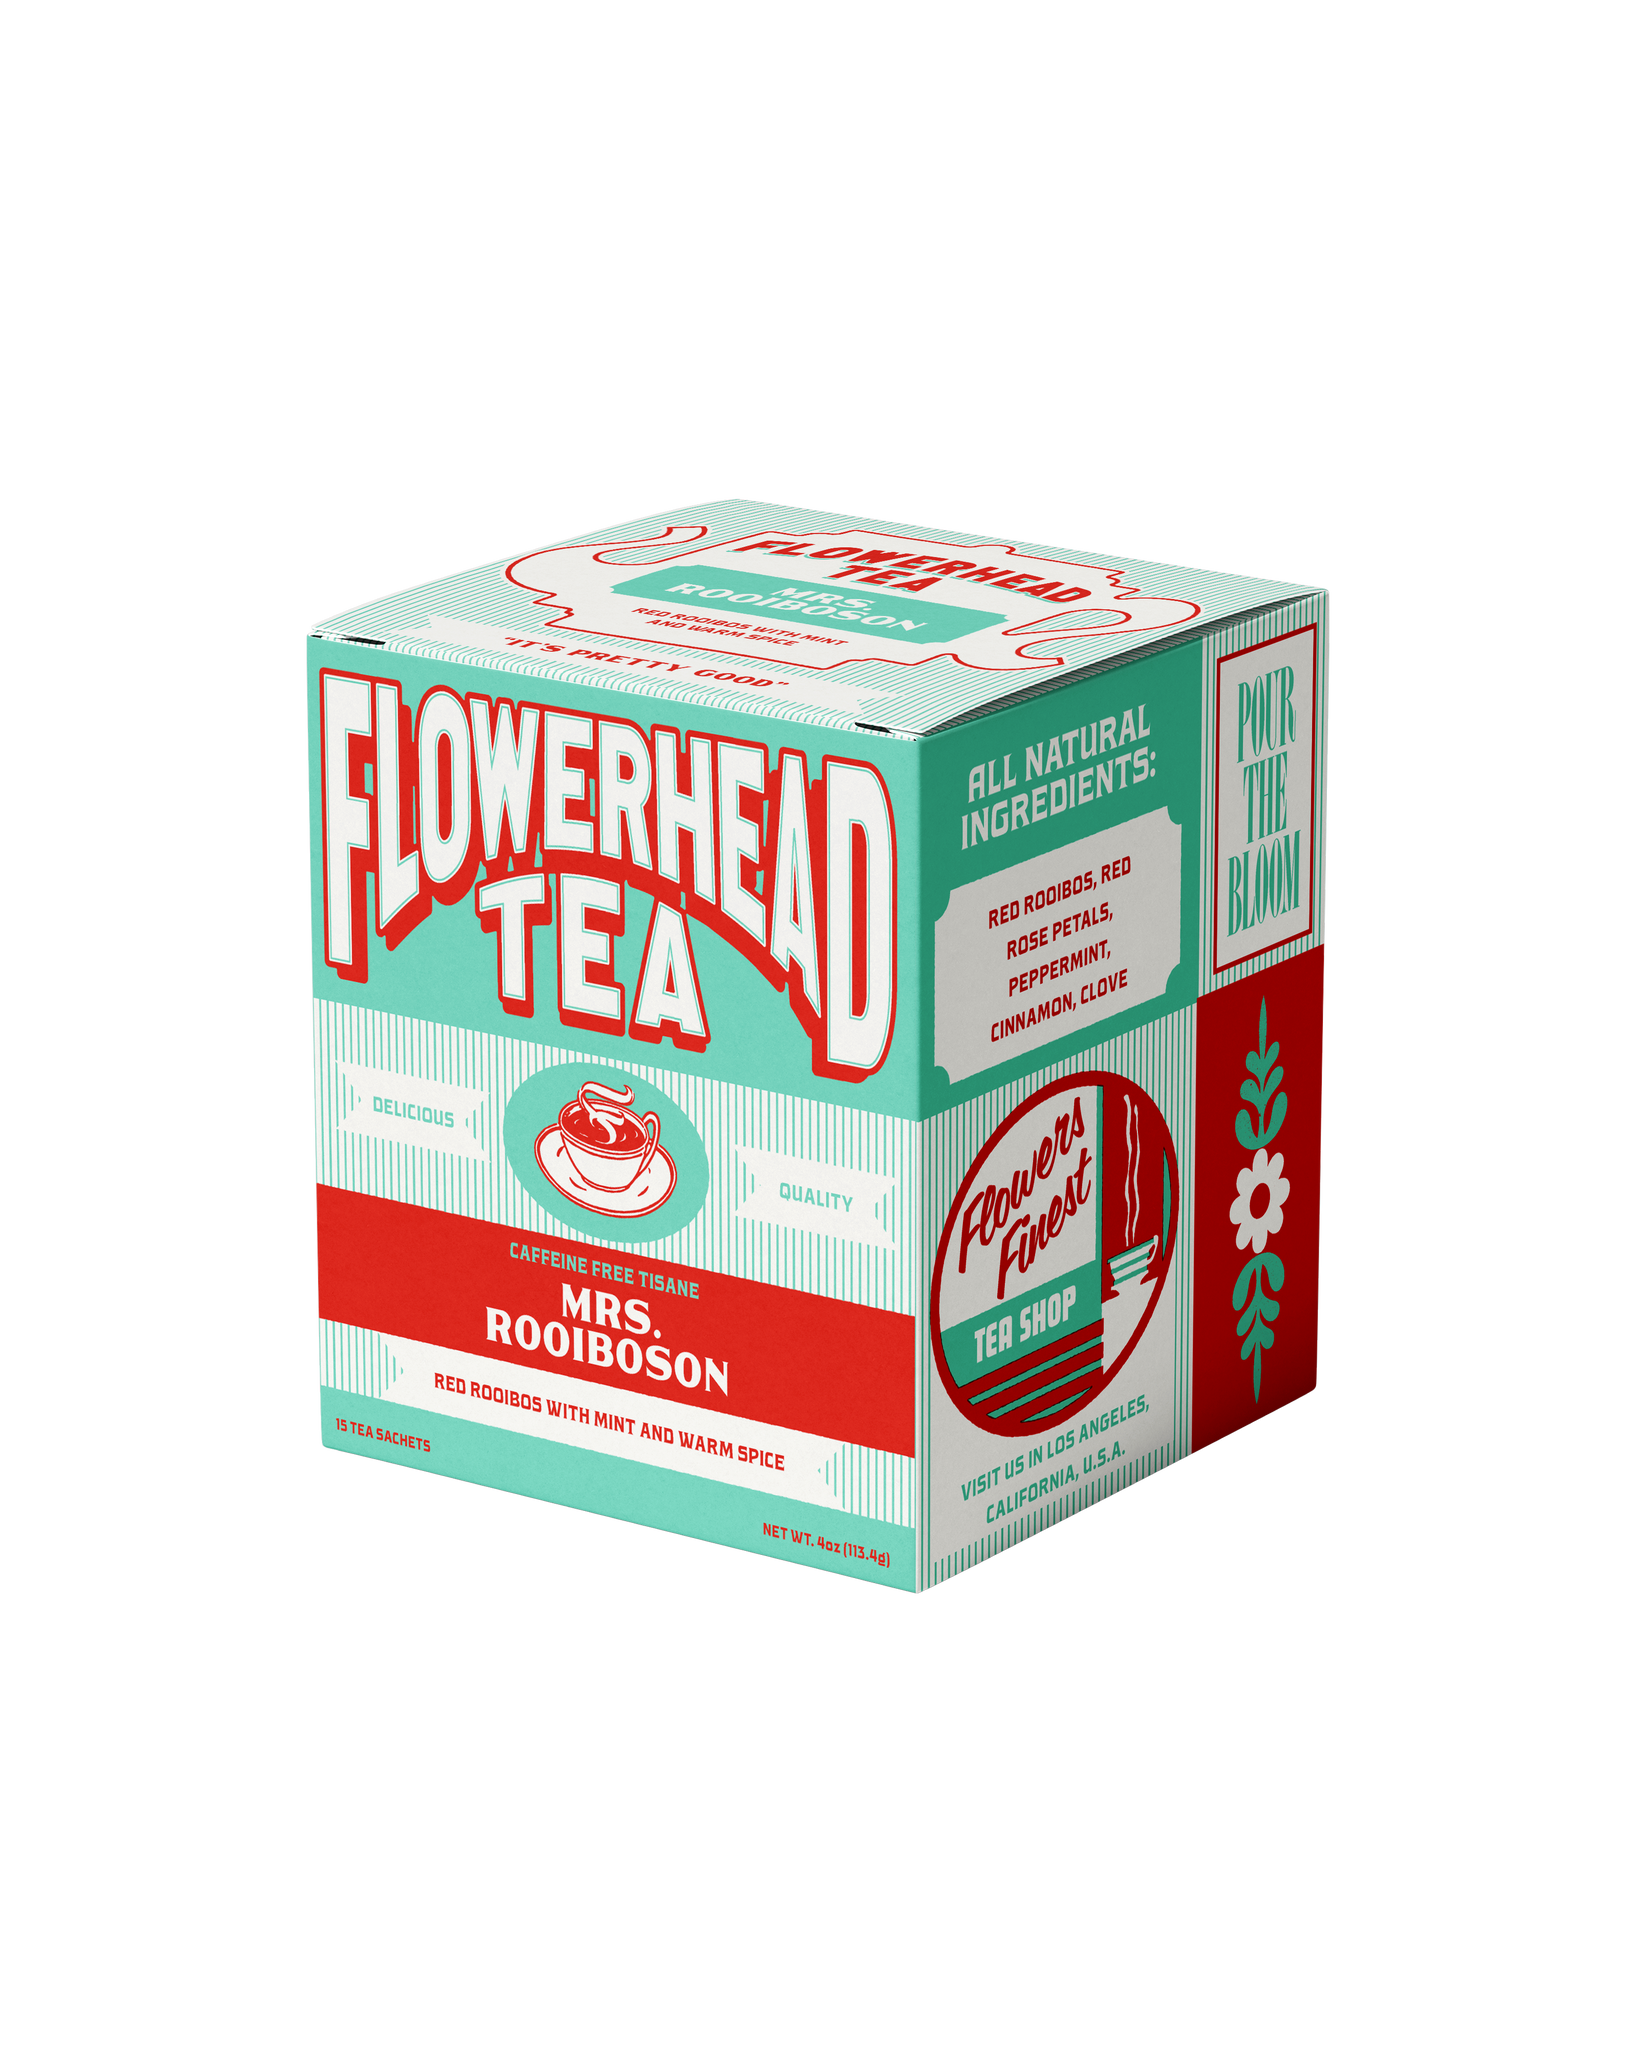 Flowerhead Tea: Mrs. Rooiboson